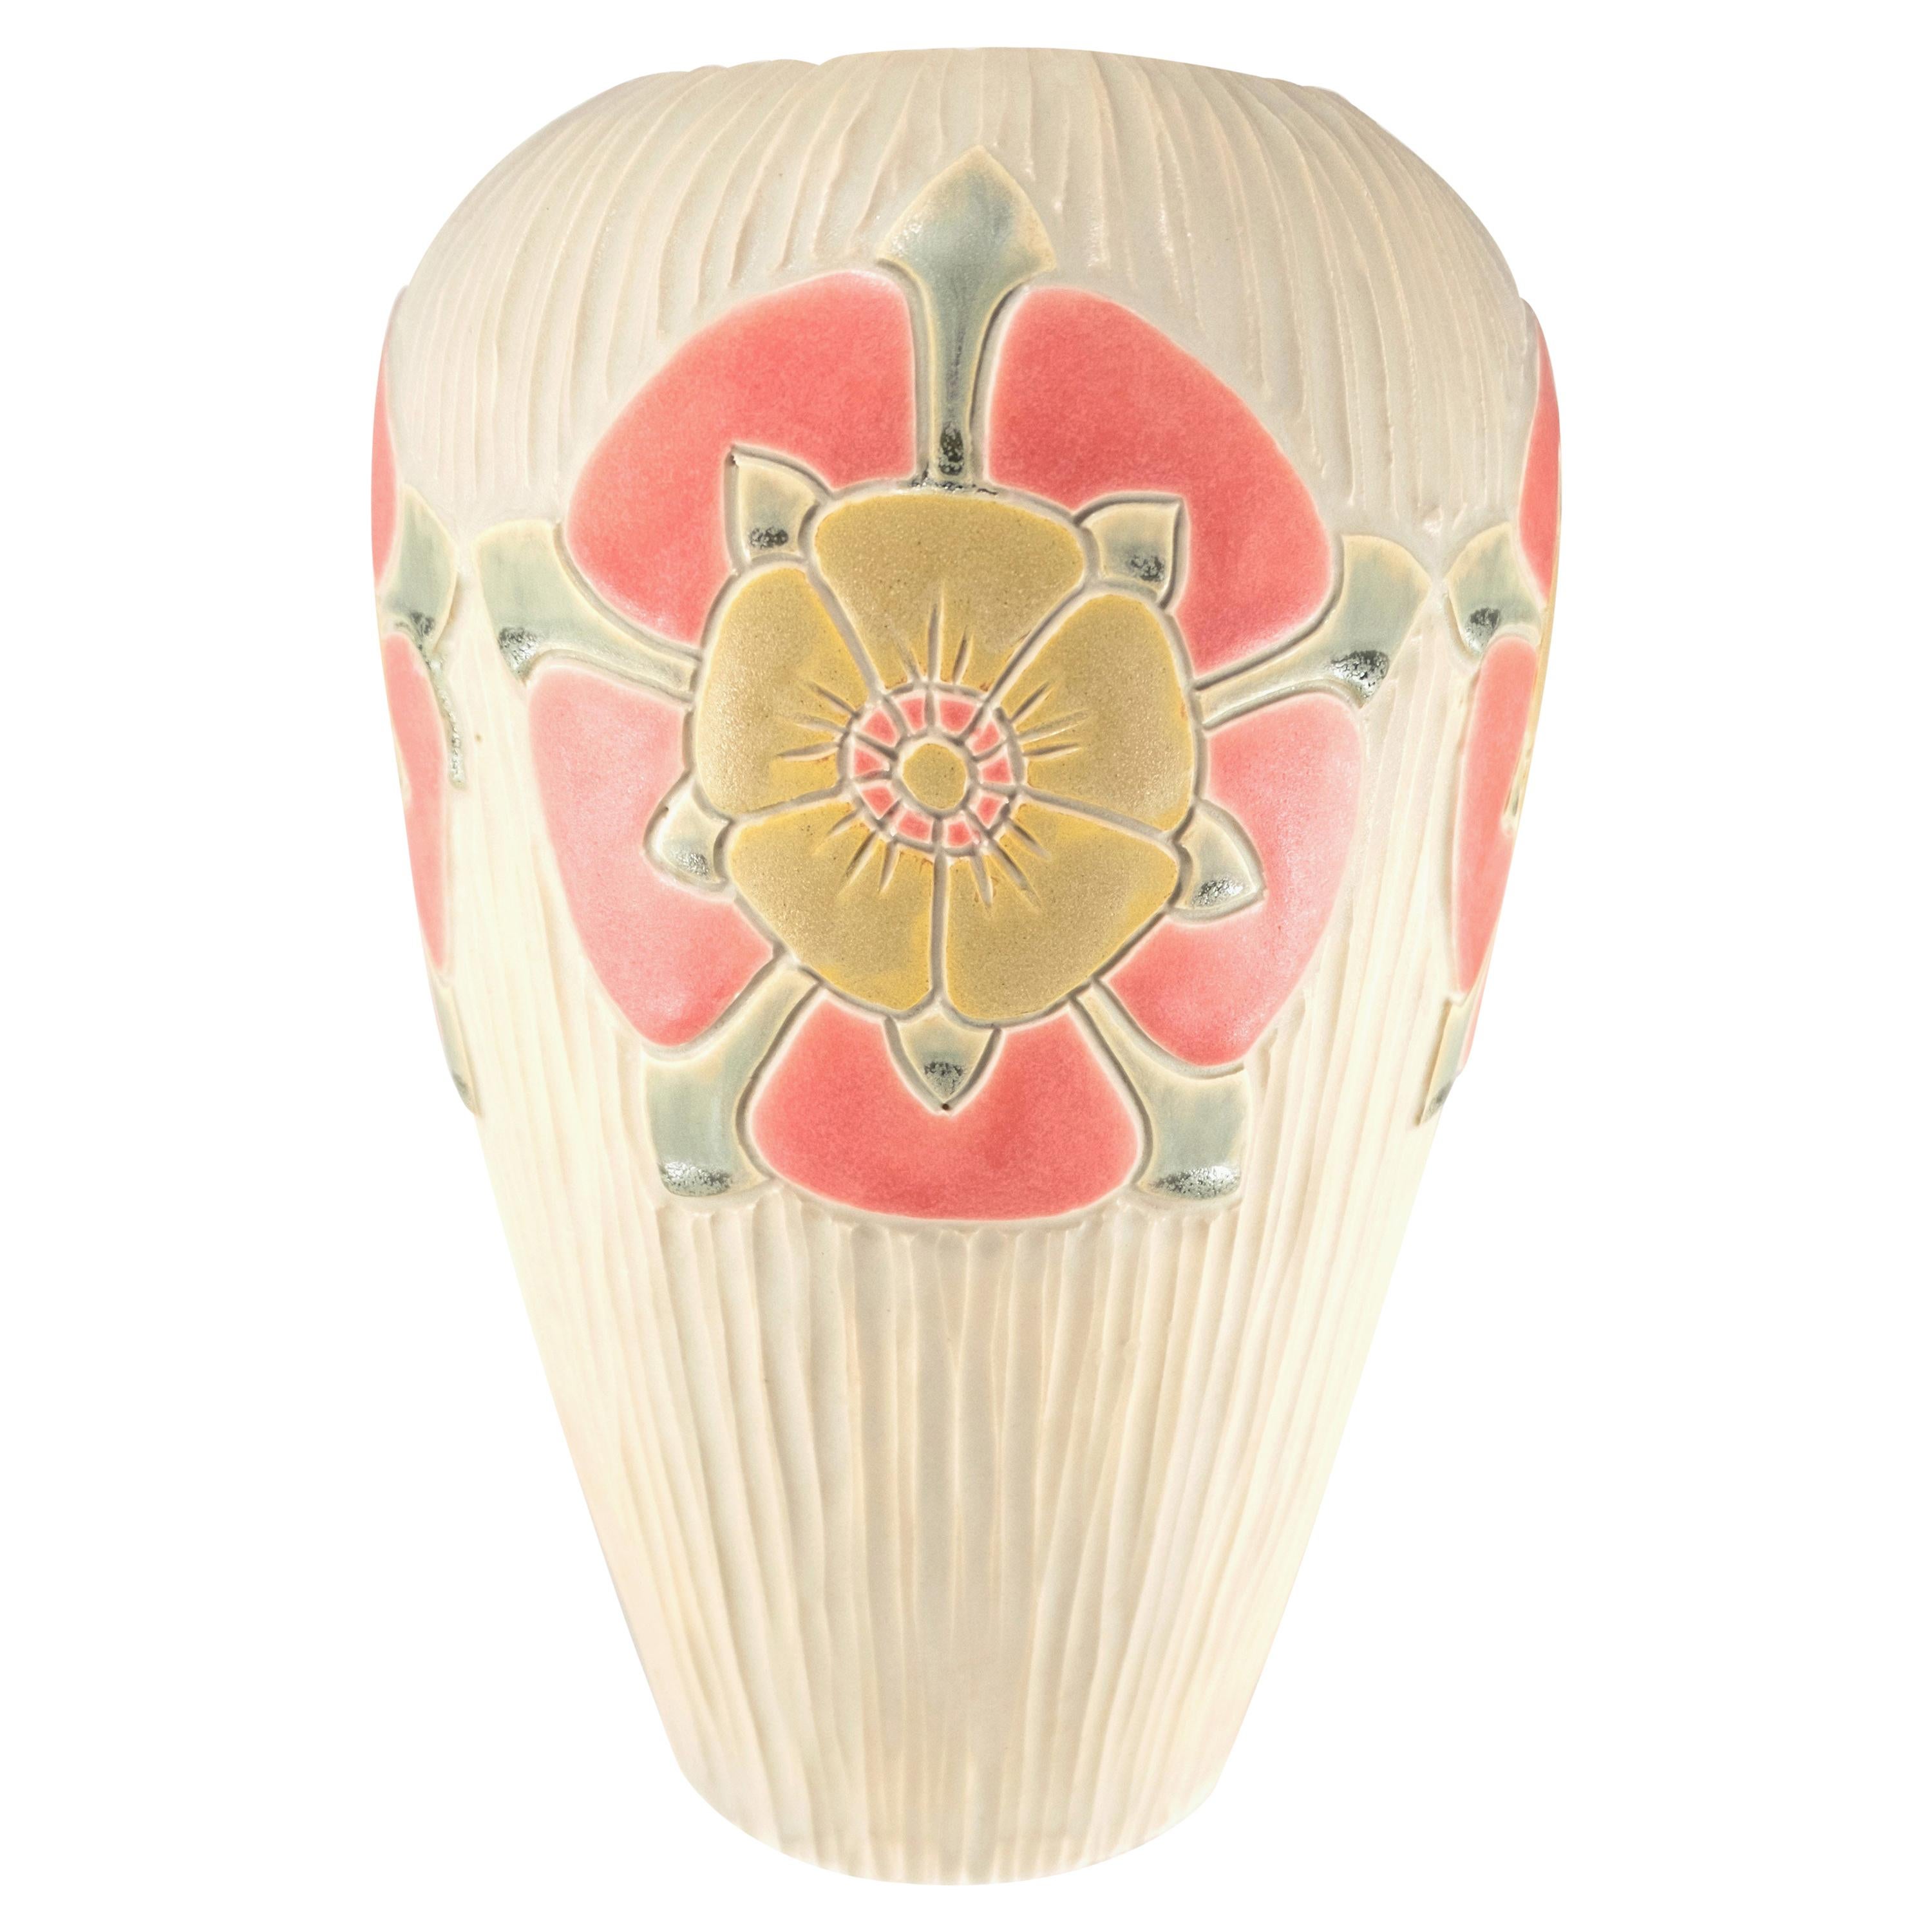 English Rose Arts & Crafts Design Porcelain Pottery Vase